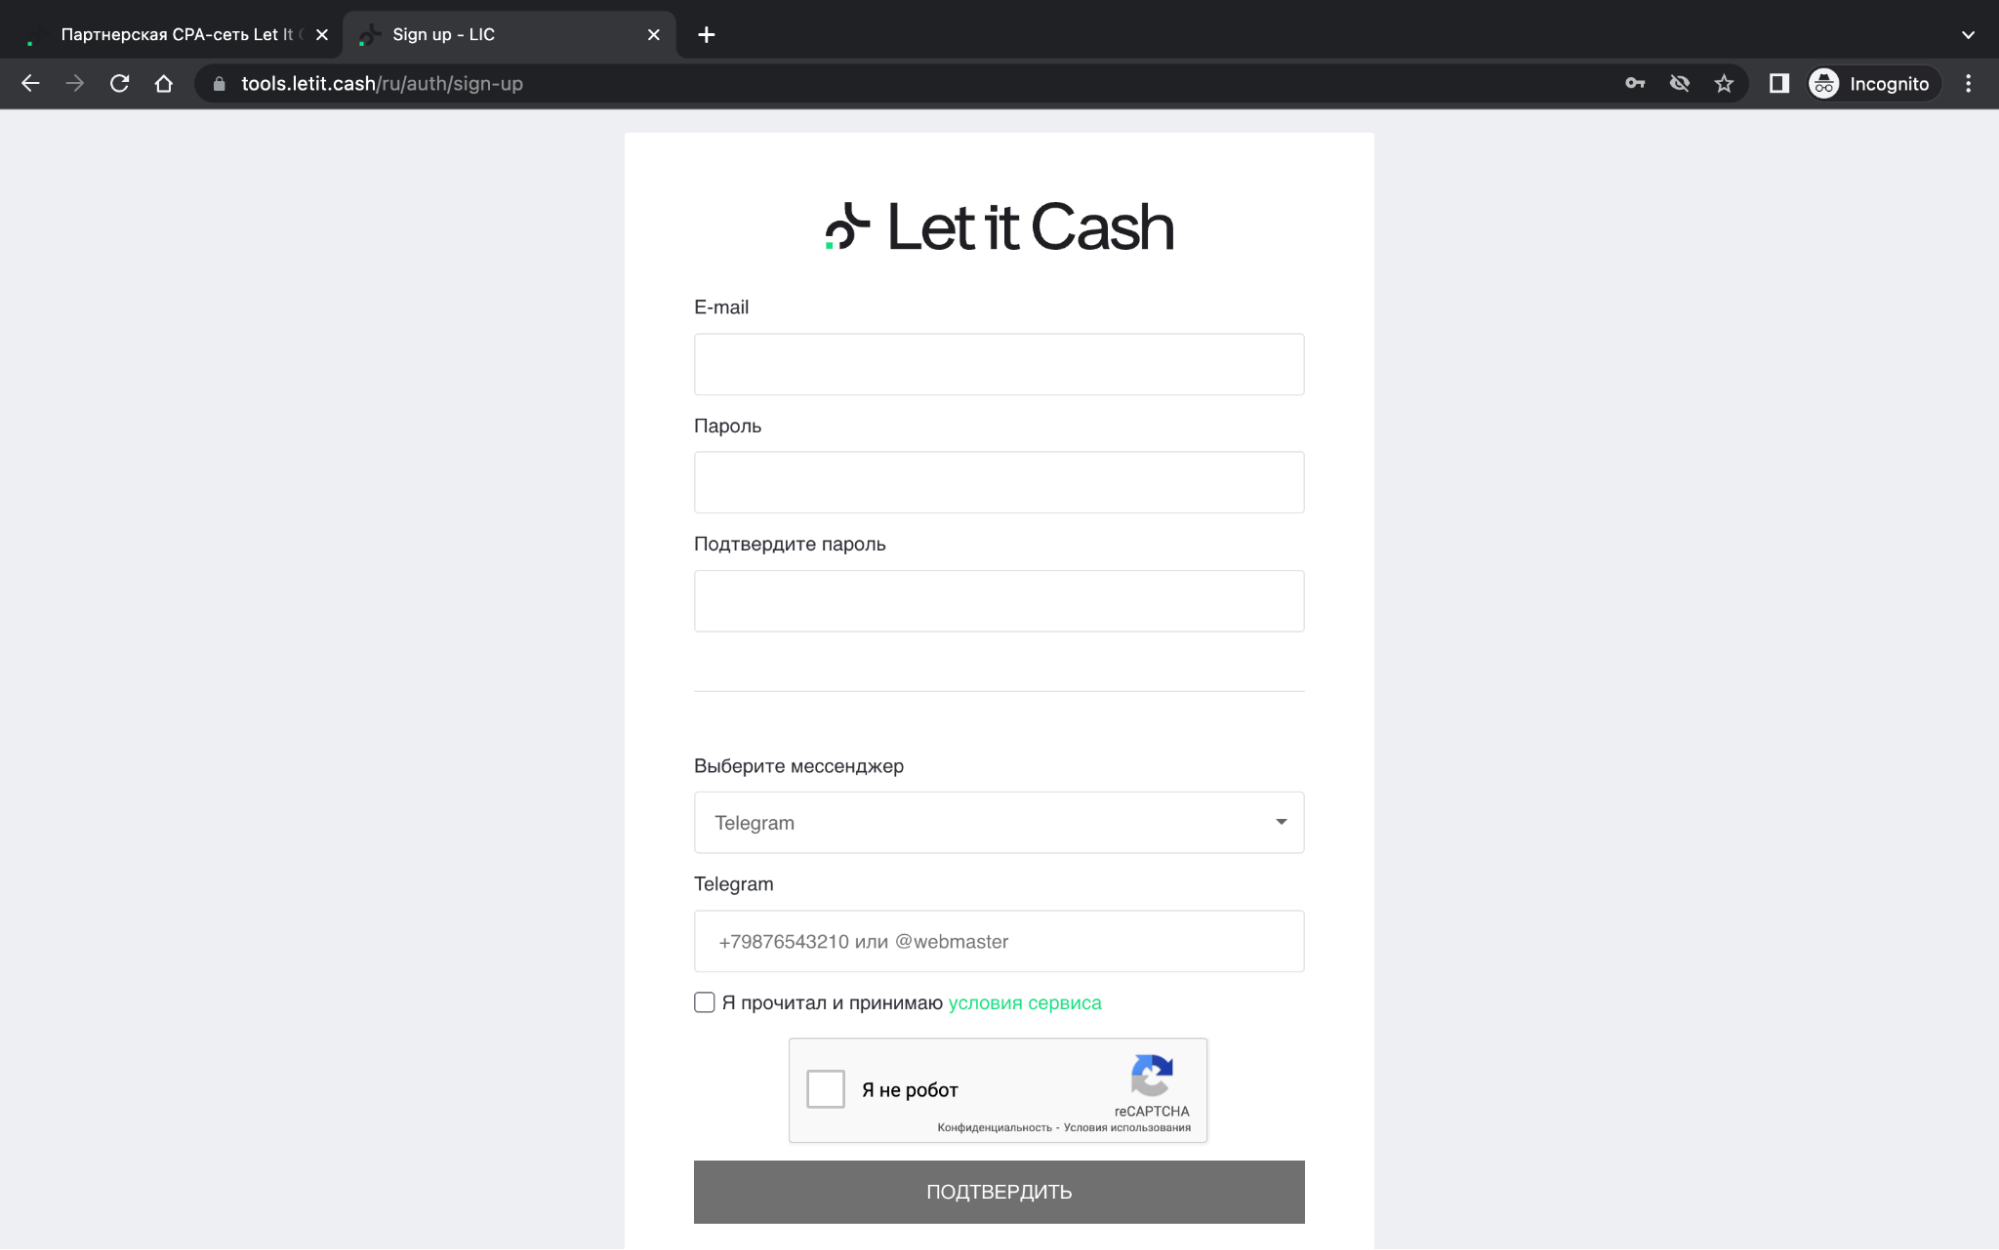 Let It Cash — отзывы и обзор партнерской сети